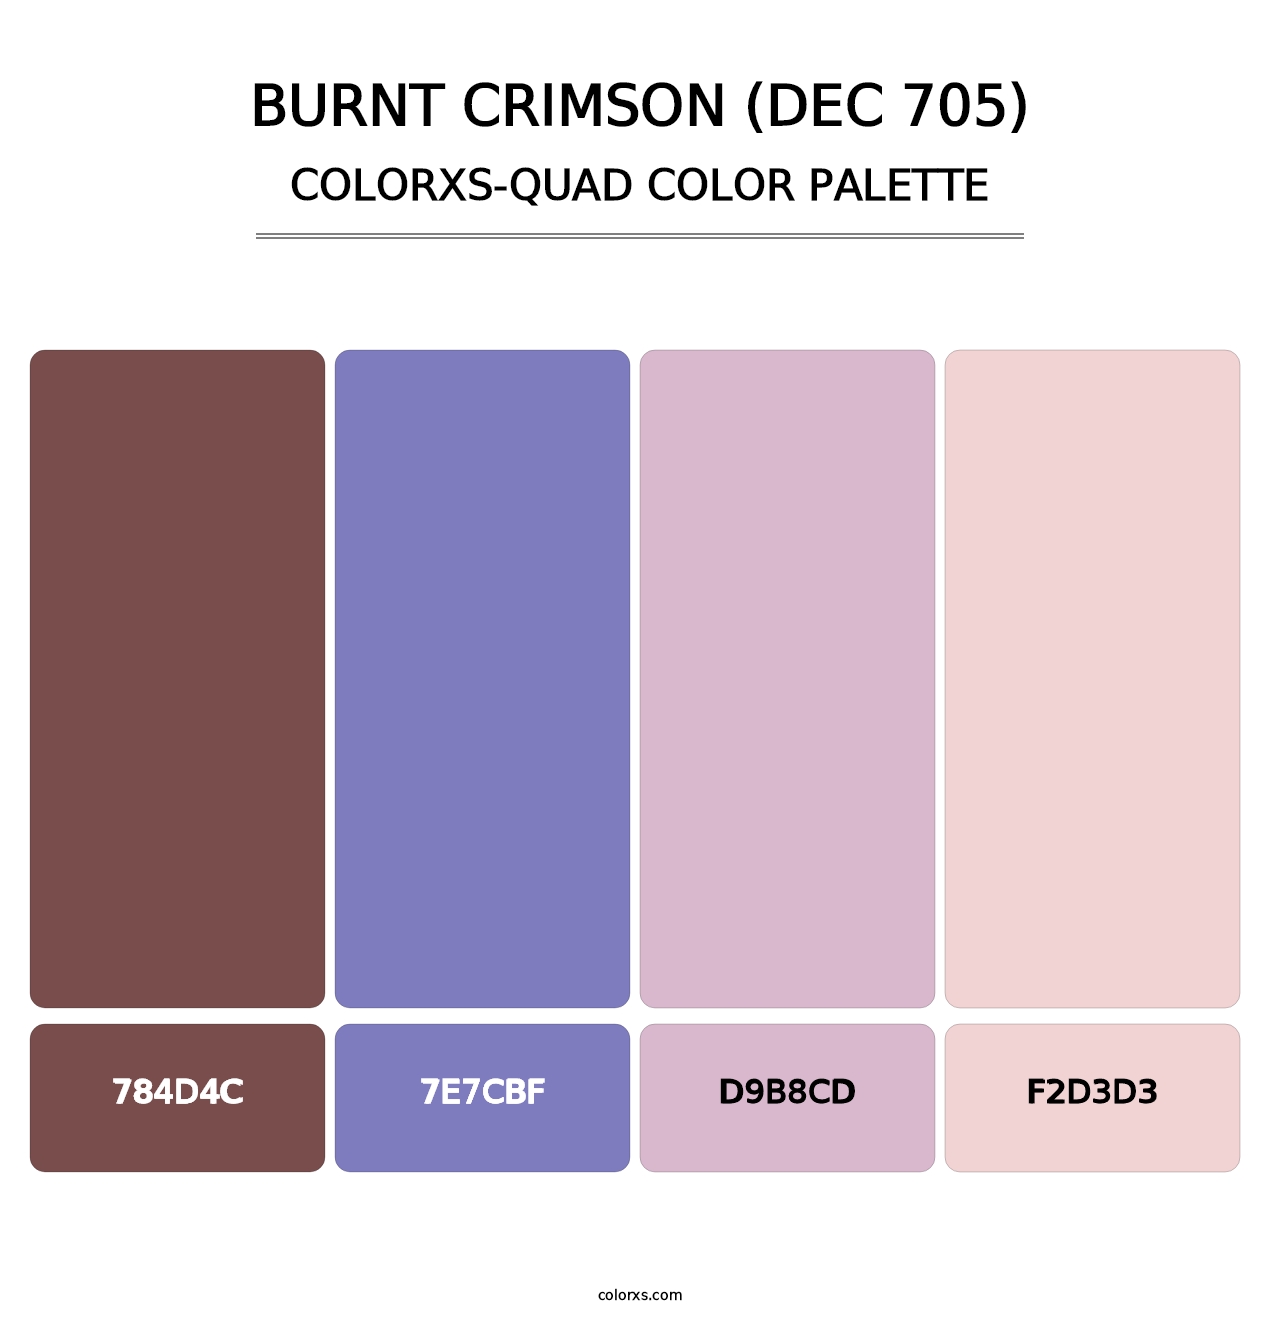 Burnt Crimson (DEC 705) - Colorxs Quad Palette